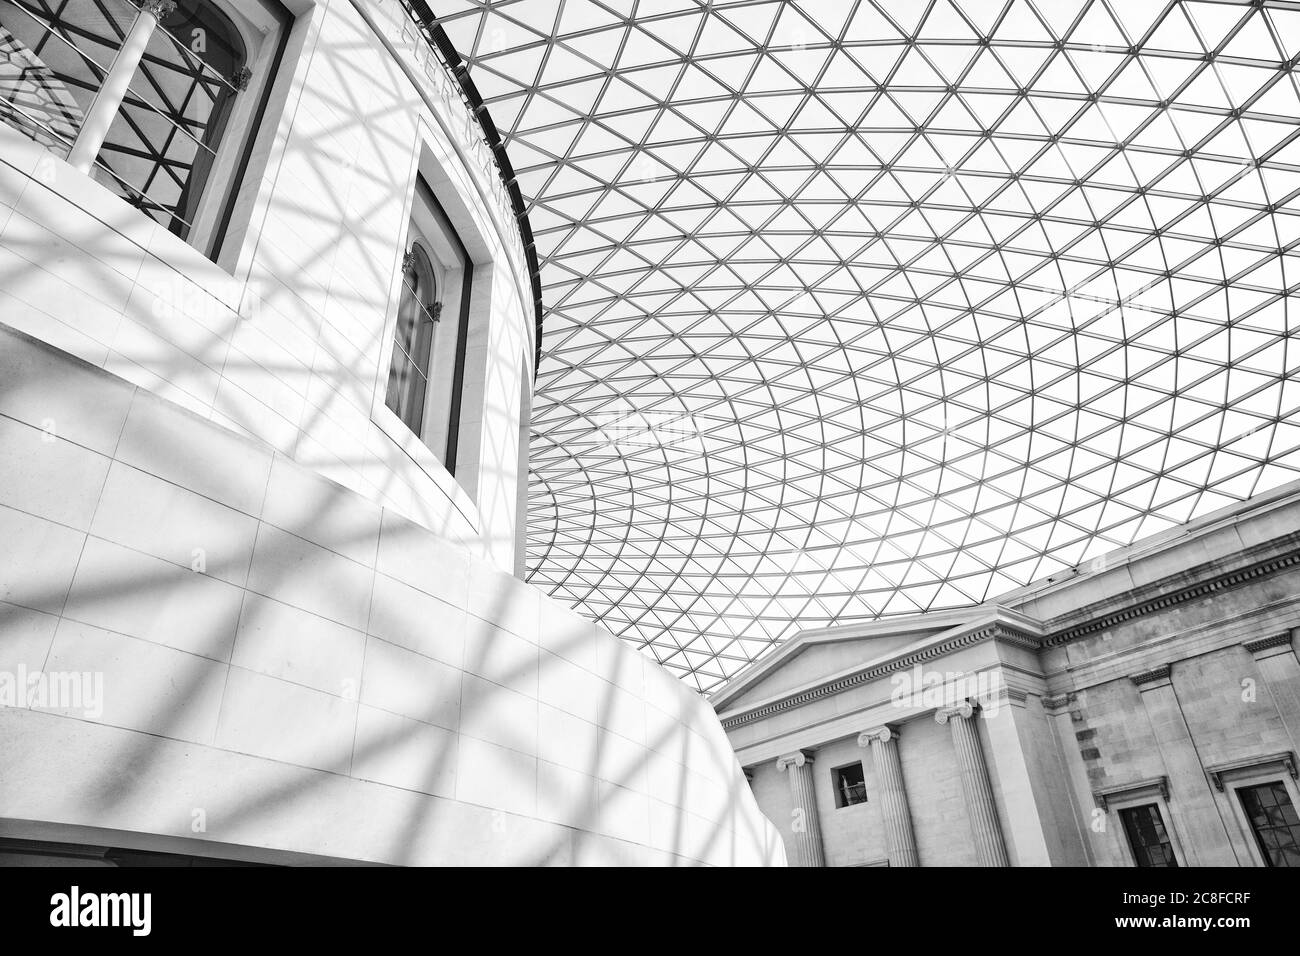 Struttura del tetto in vetro cellulare e acciaio del British Museum Great Court nel quartiere di Bloomsbury a Londra UK Foto Stock